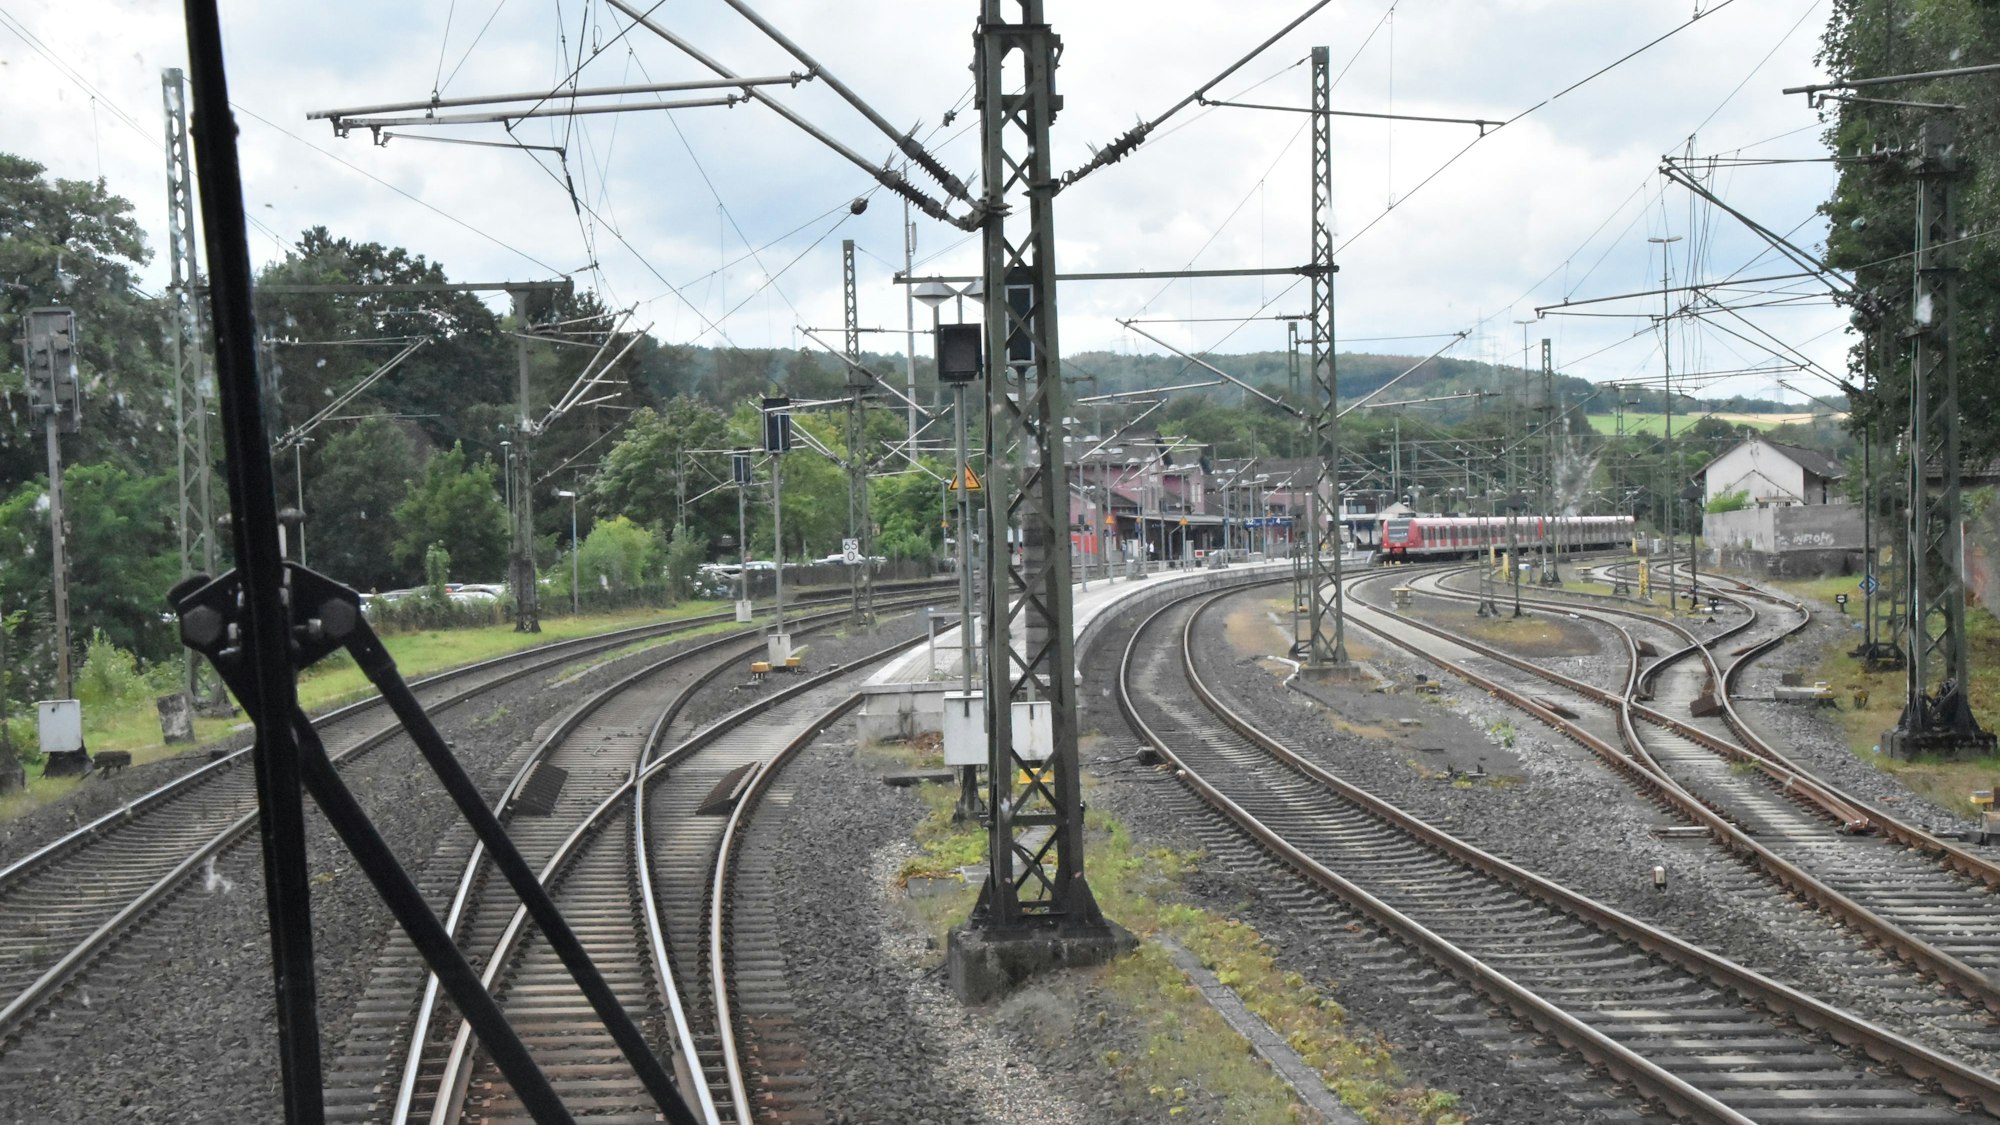 Blick aus dem Führerstand eines Regionalexpresszugs. Zu sehen sind die Schienen, Oberleitungsmasten und ein rotes Bahnhofsgebäude im Hintergrund. Auf einem Gleis stehen rote Waggons einer S-Bahn.